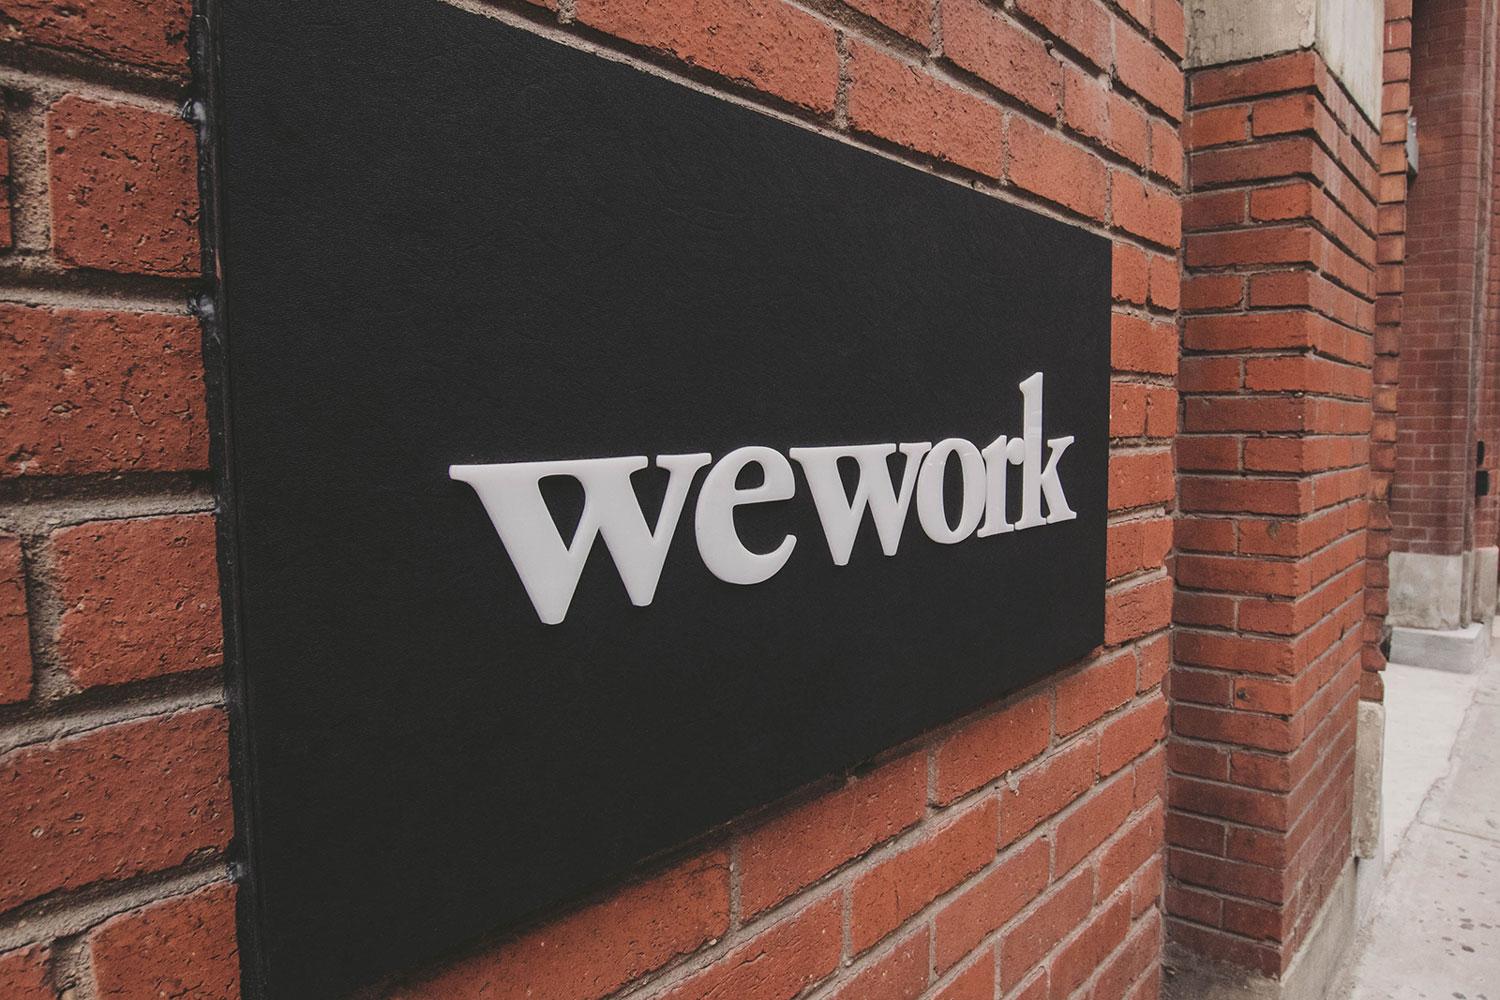 Comment WeWork a imposé le coworking comme modèle d'avenir ?